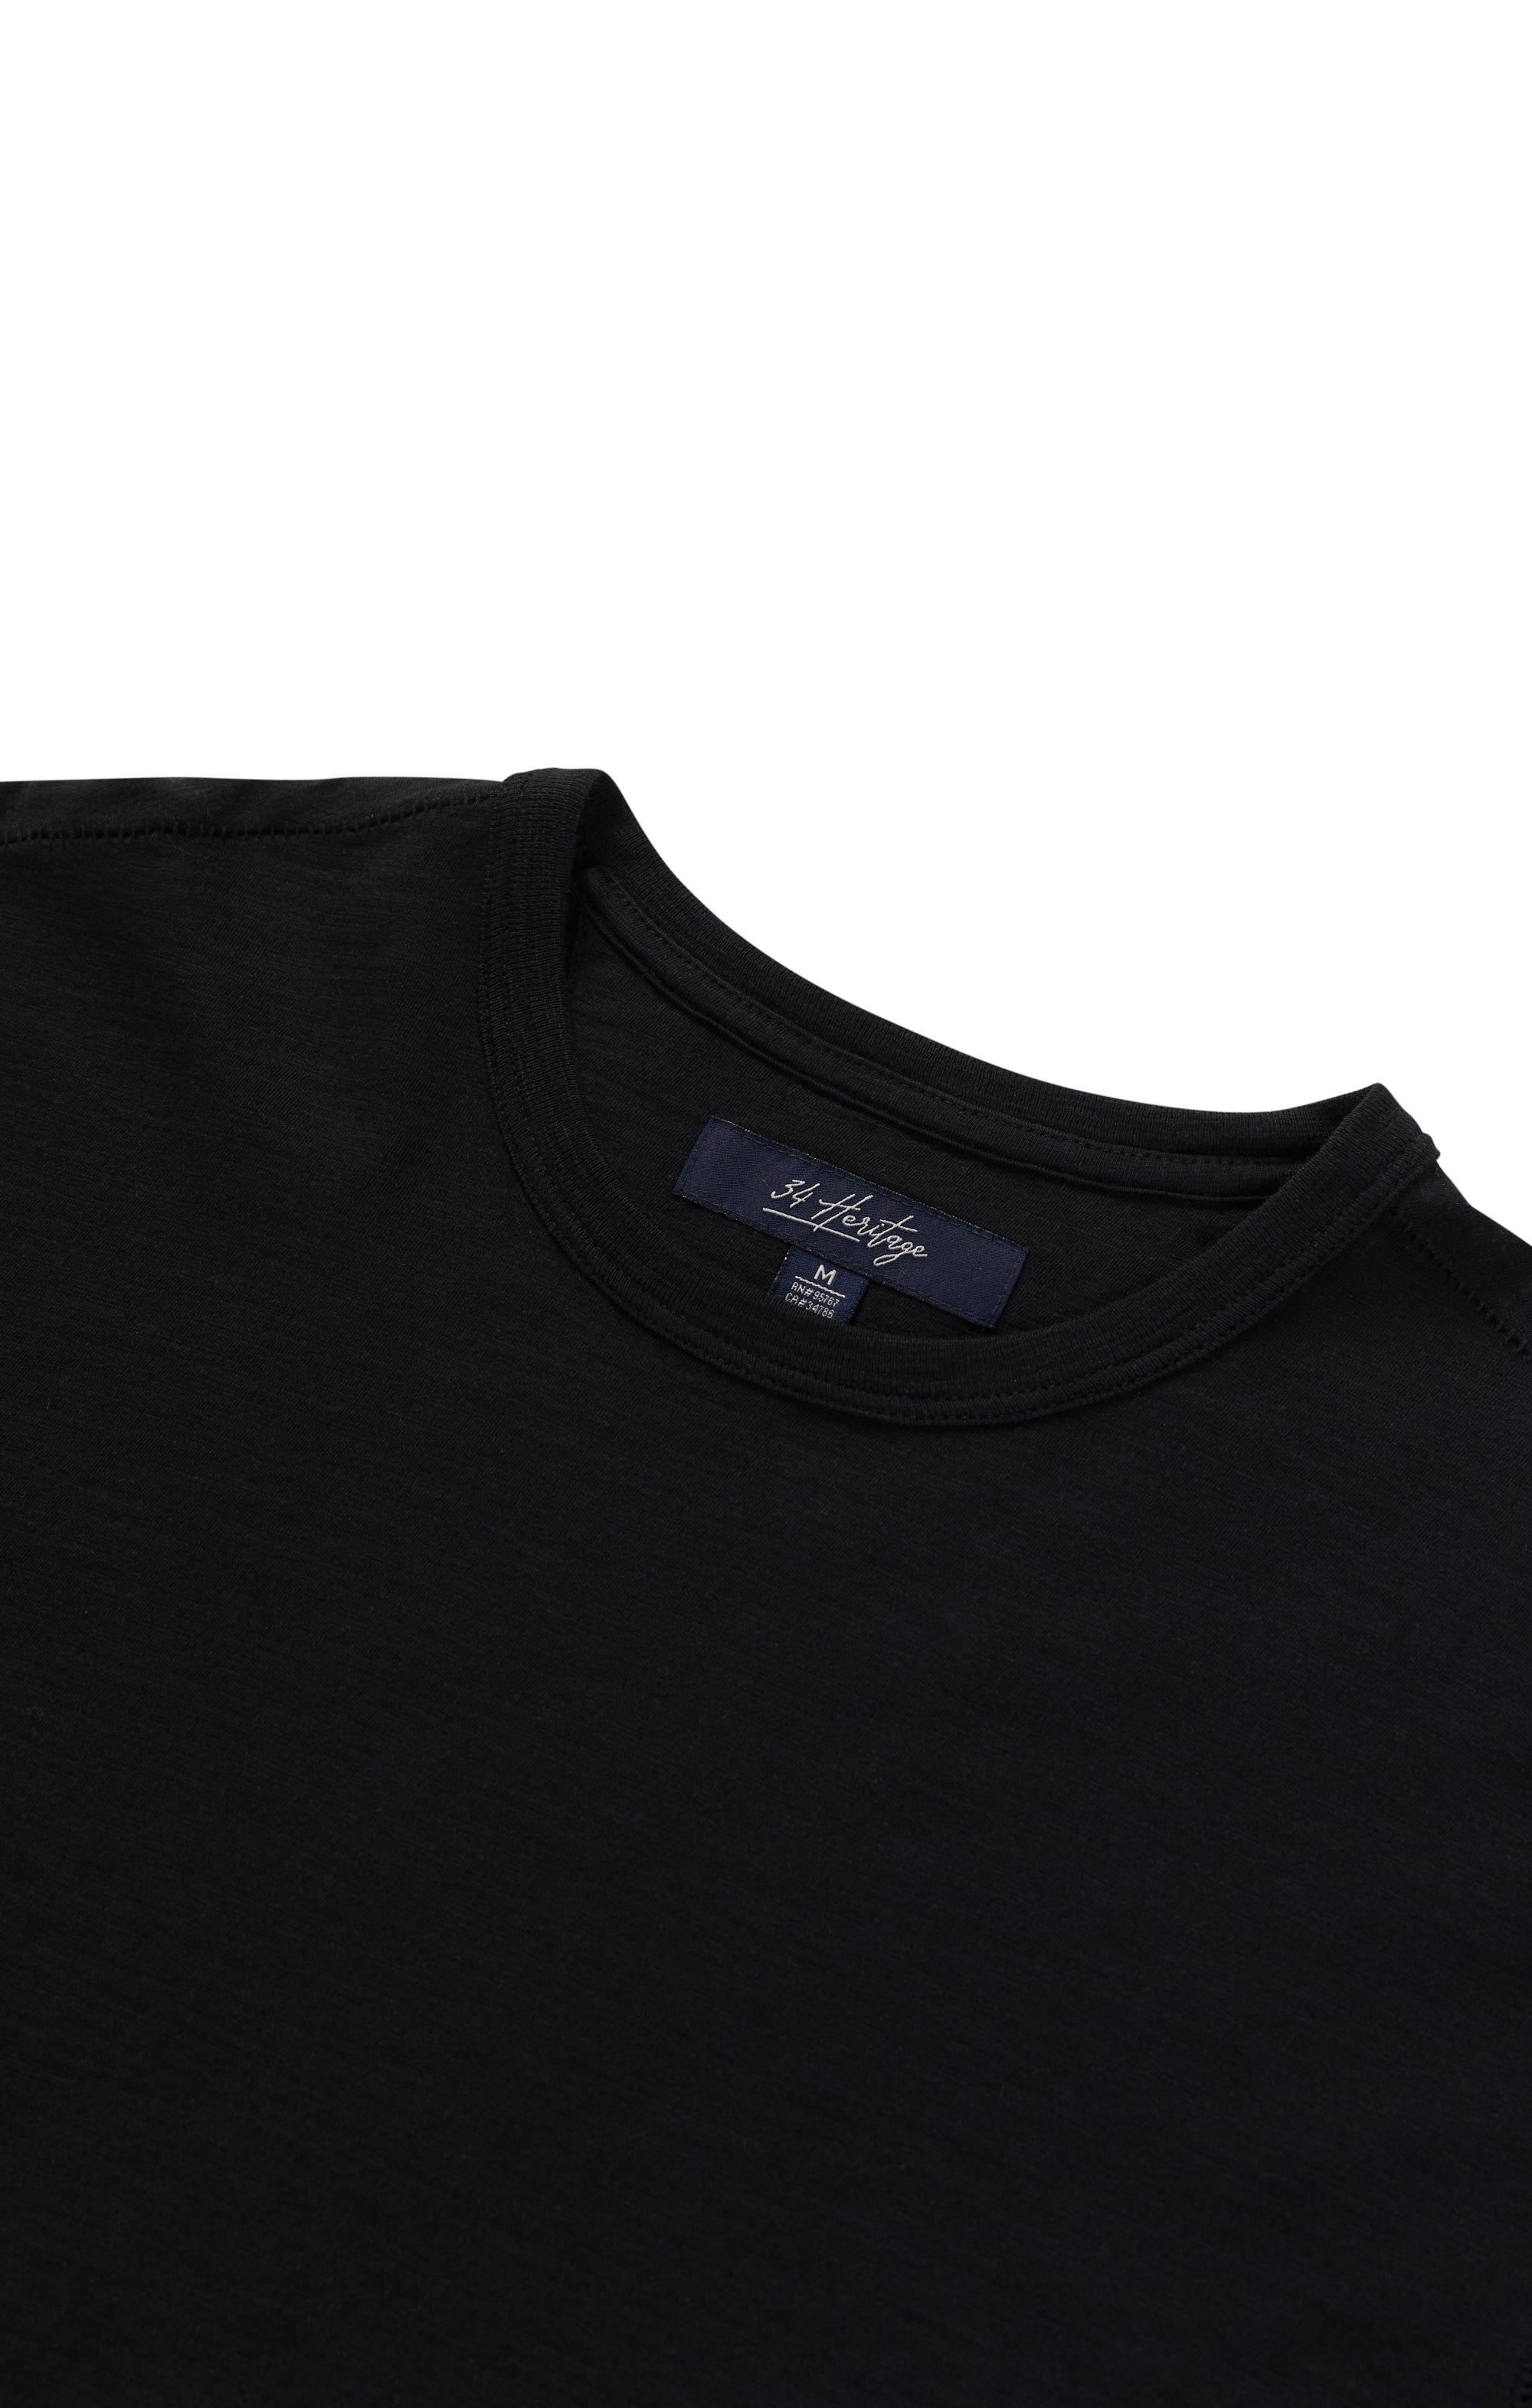 Slub Crew Neck T-Shirt in Black Image 9